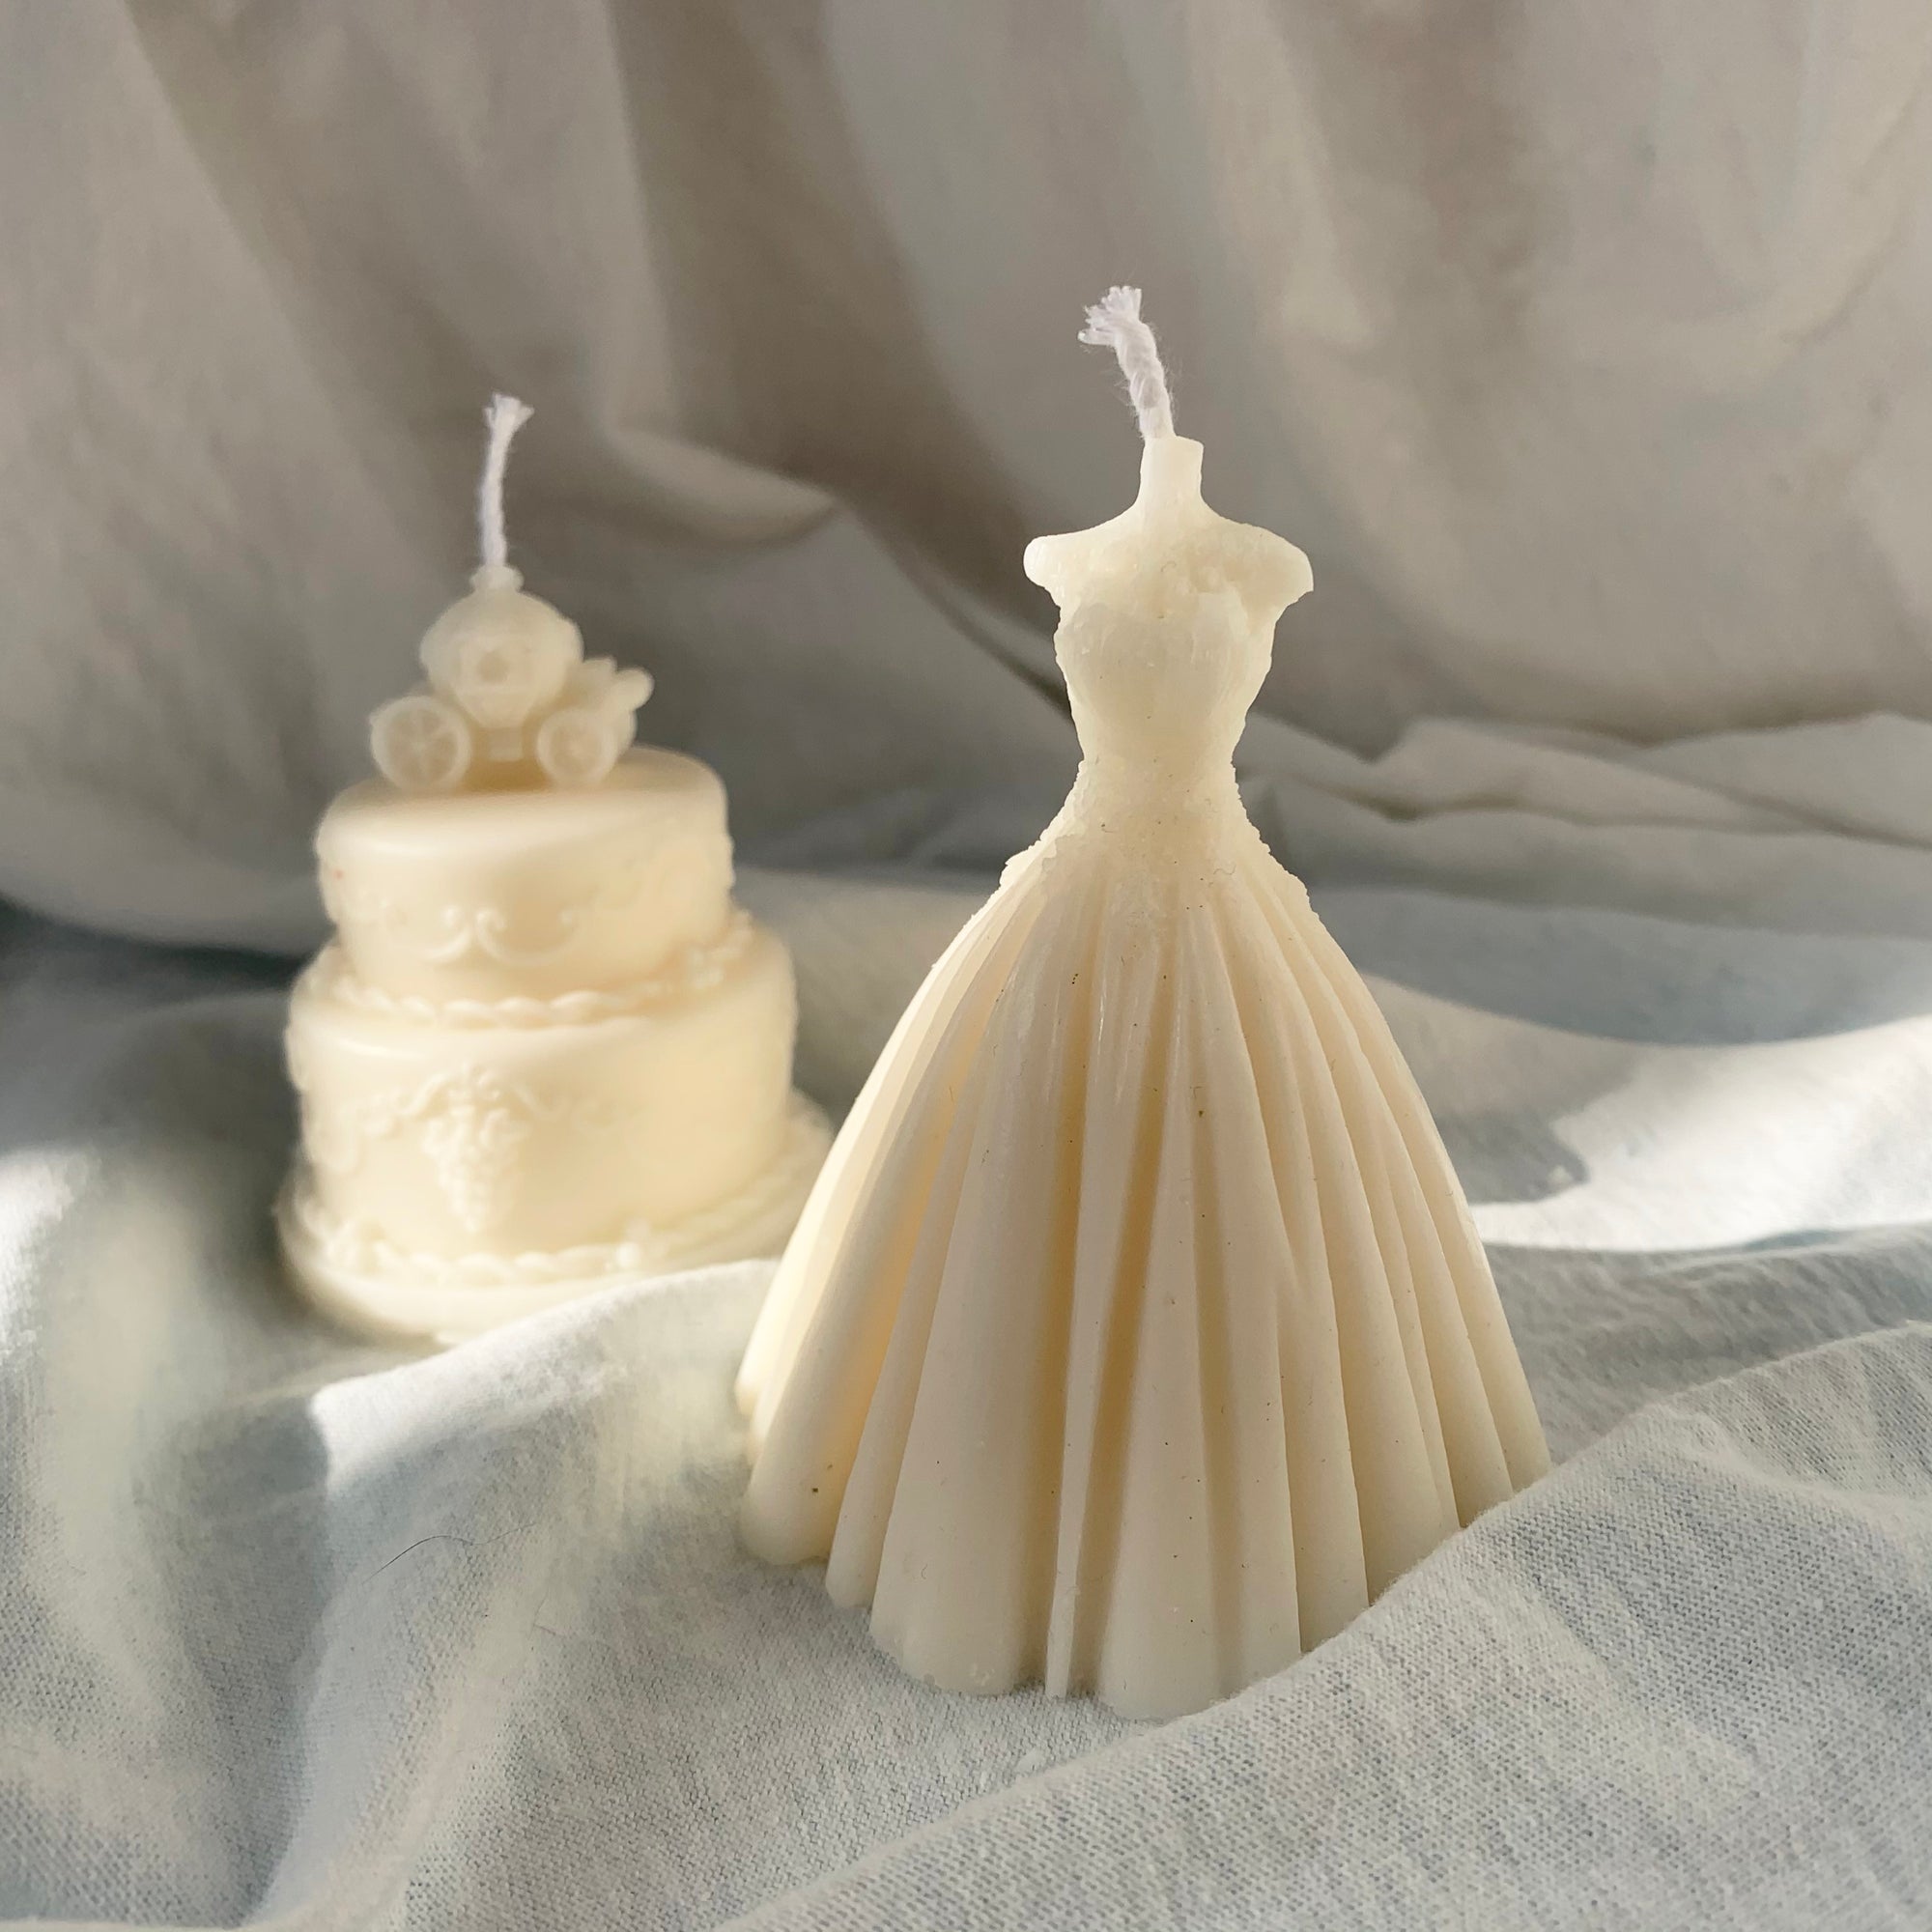 Bride & Wedding Shaped Soy Wax Candle │ Kawaii Candle │ Yui Brooklyn